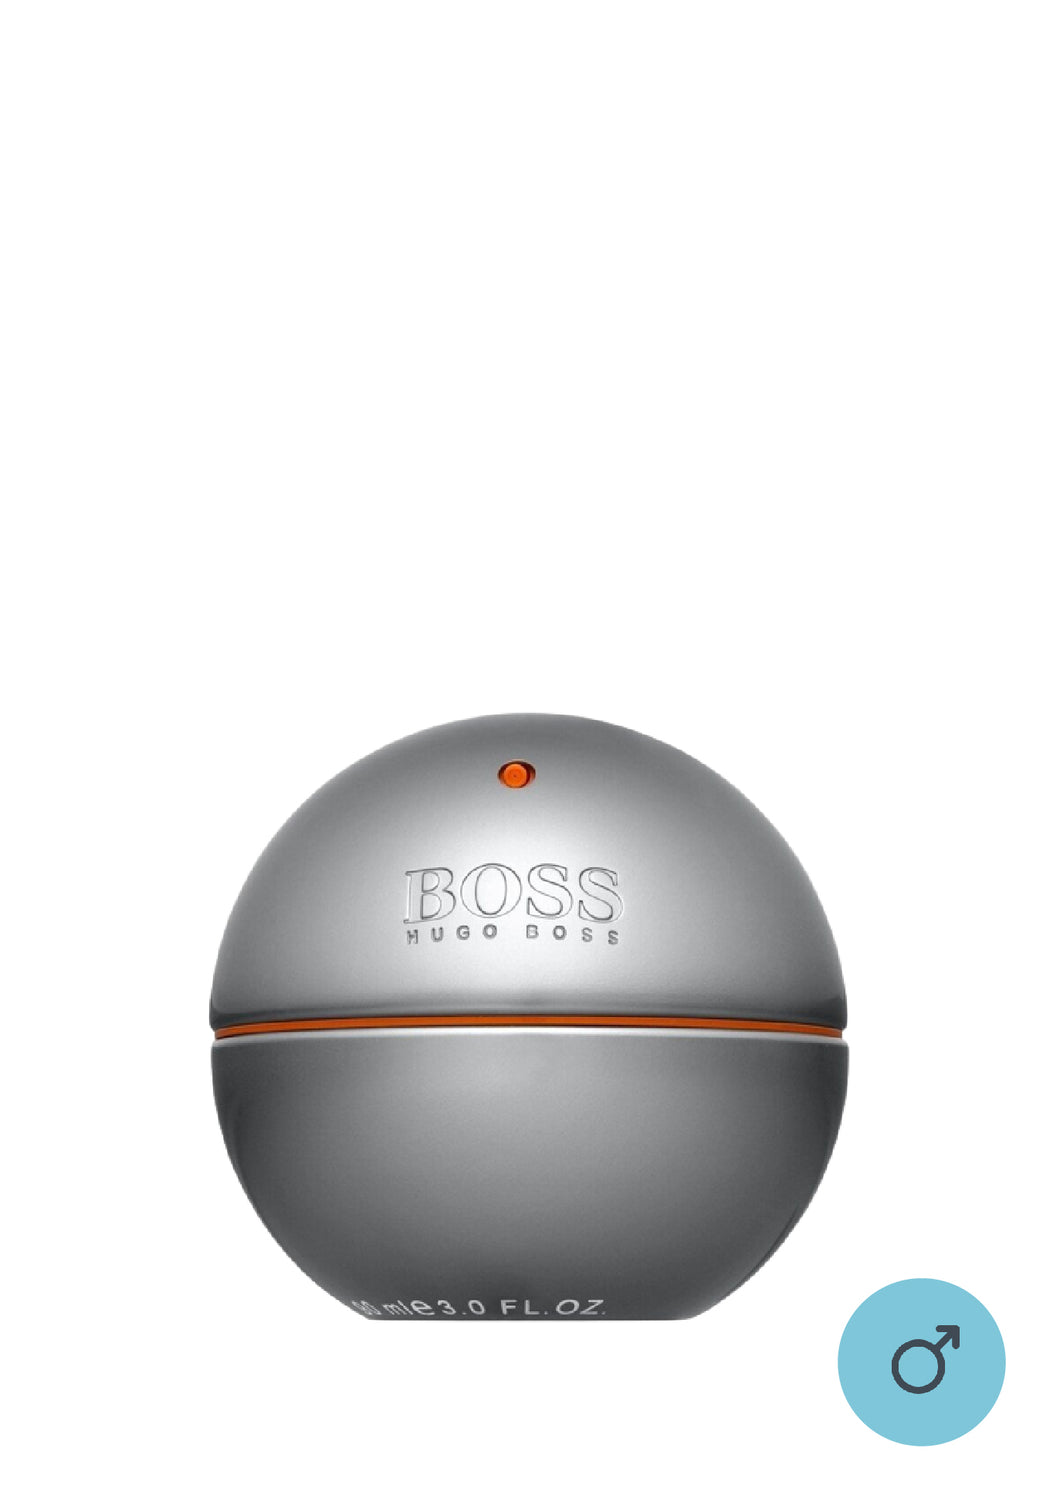 Hugo Boss Boss in Motion EDT